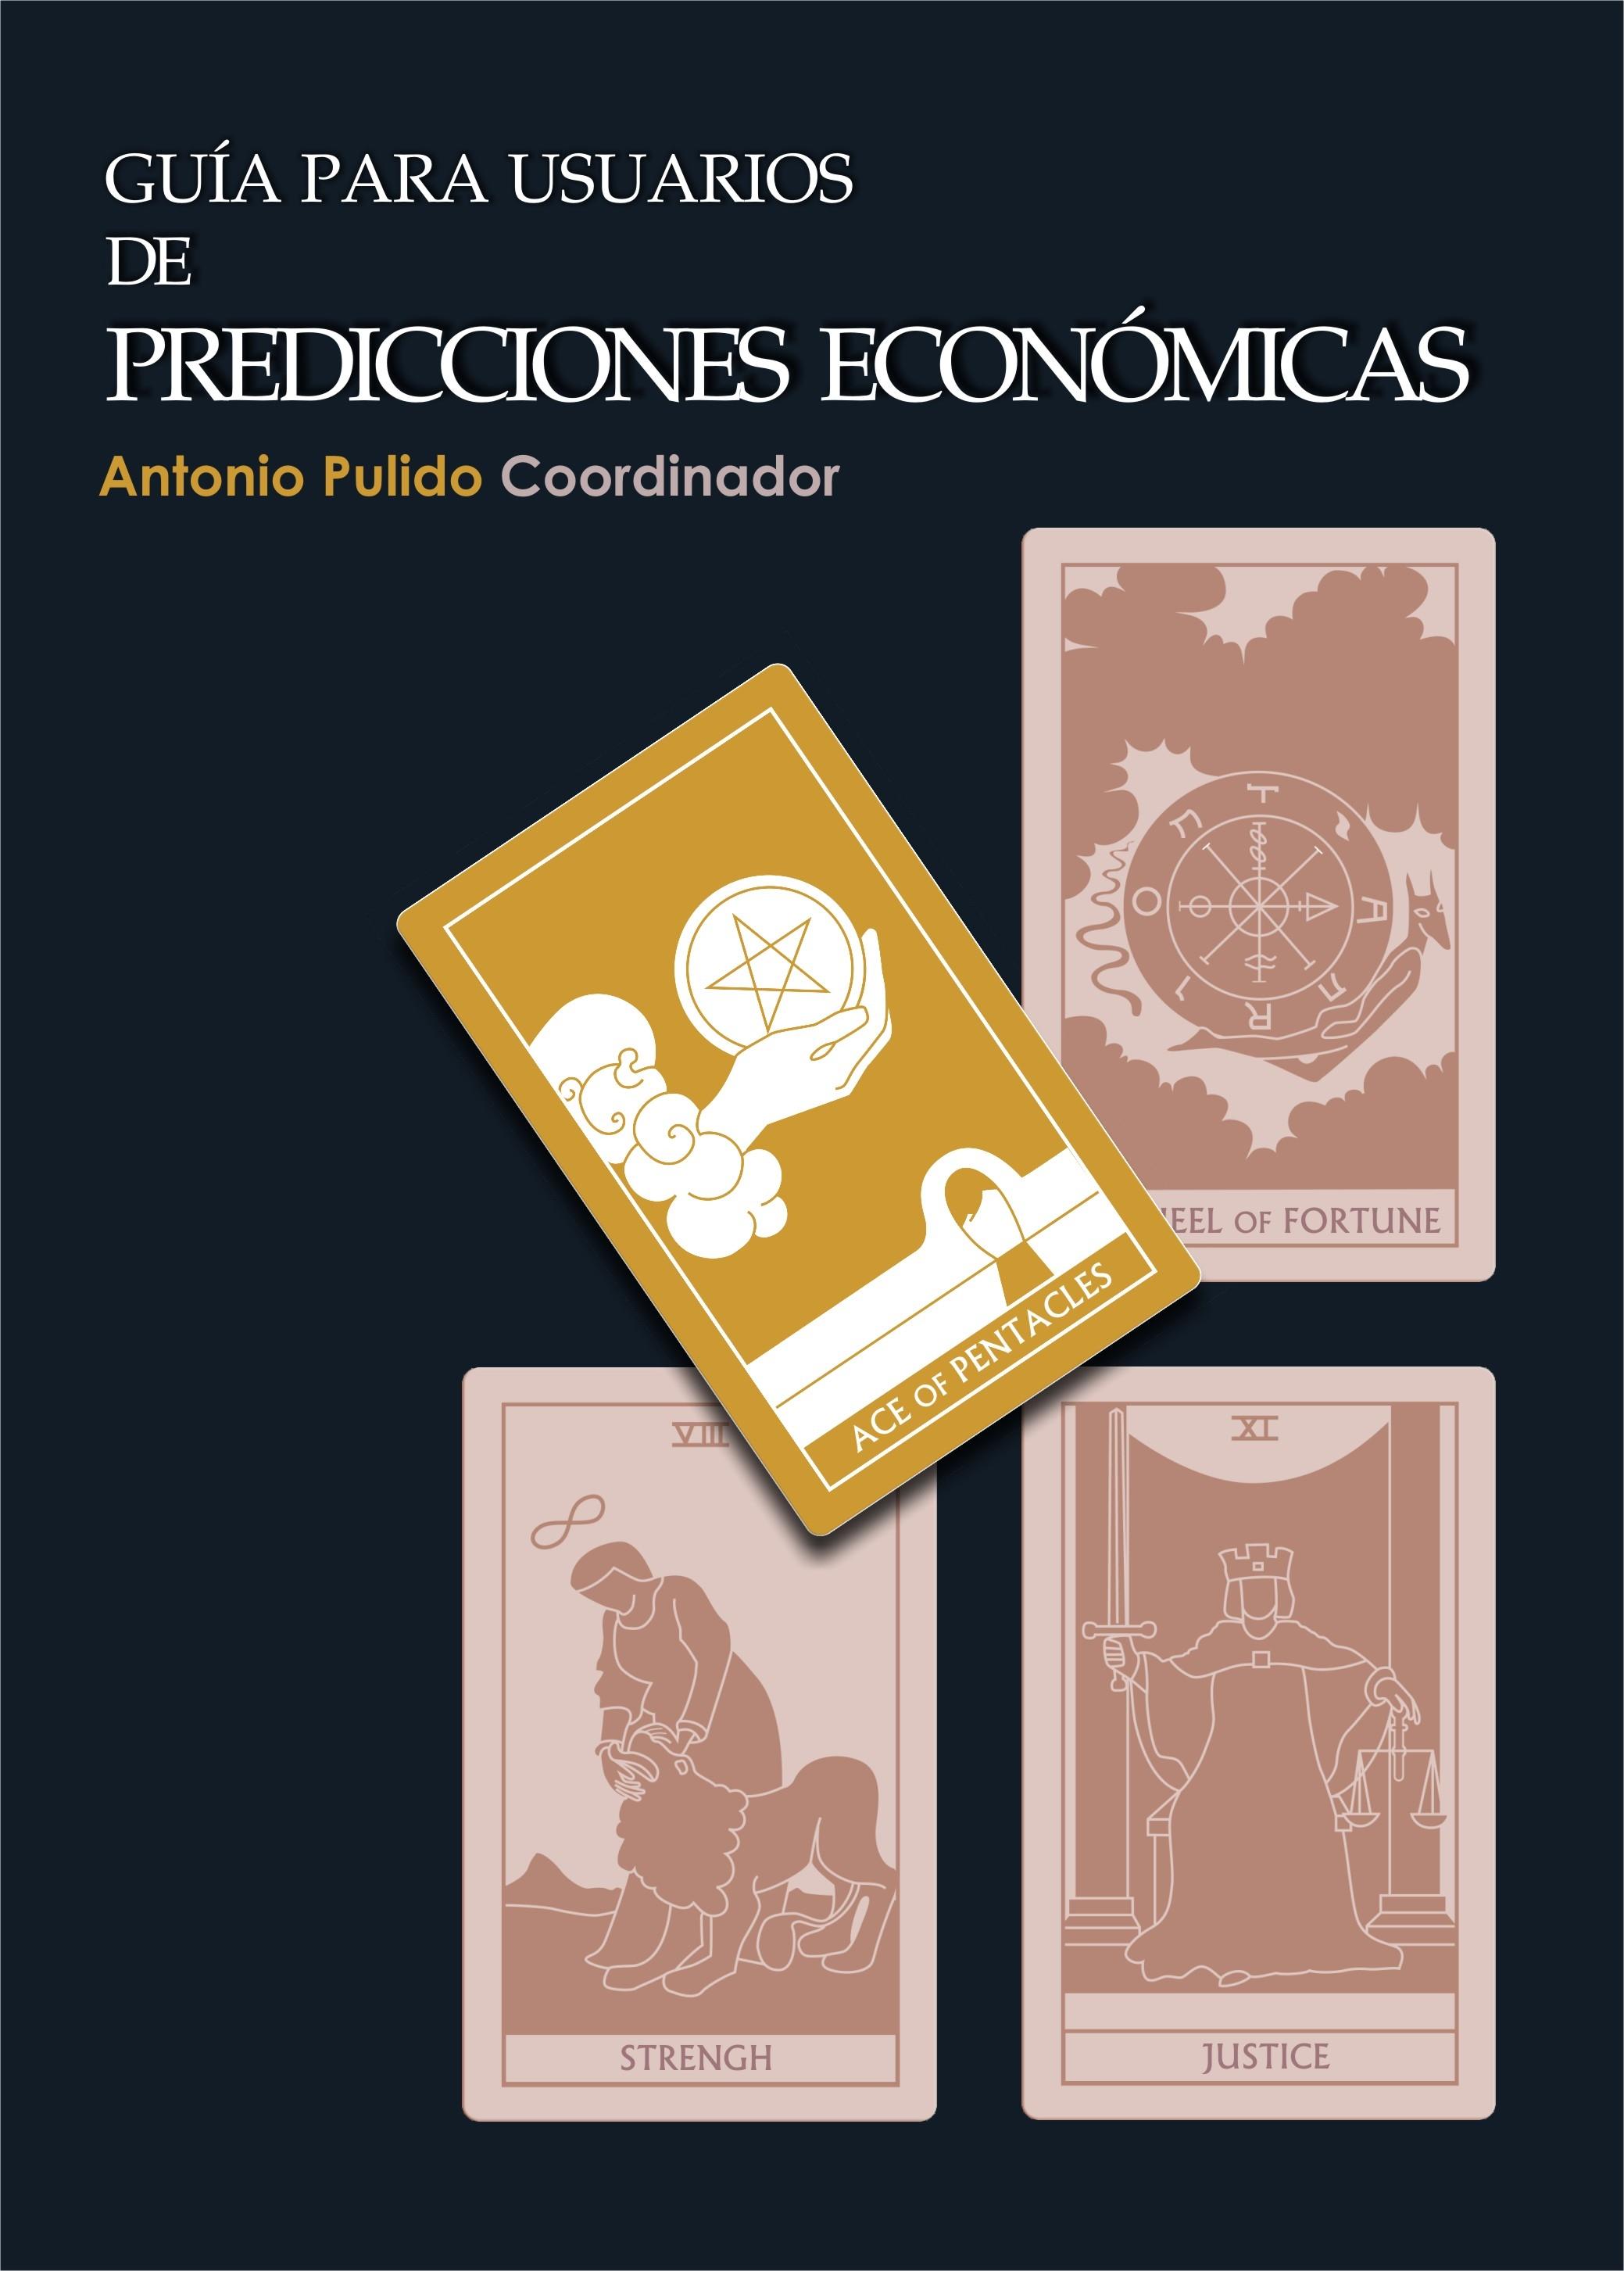 Guia para Usuarios de Predicciones Económicas.